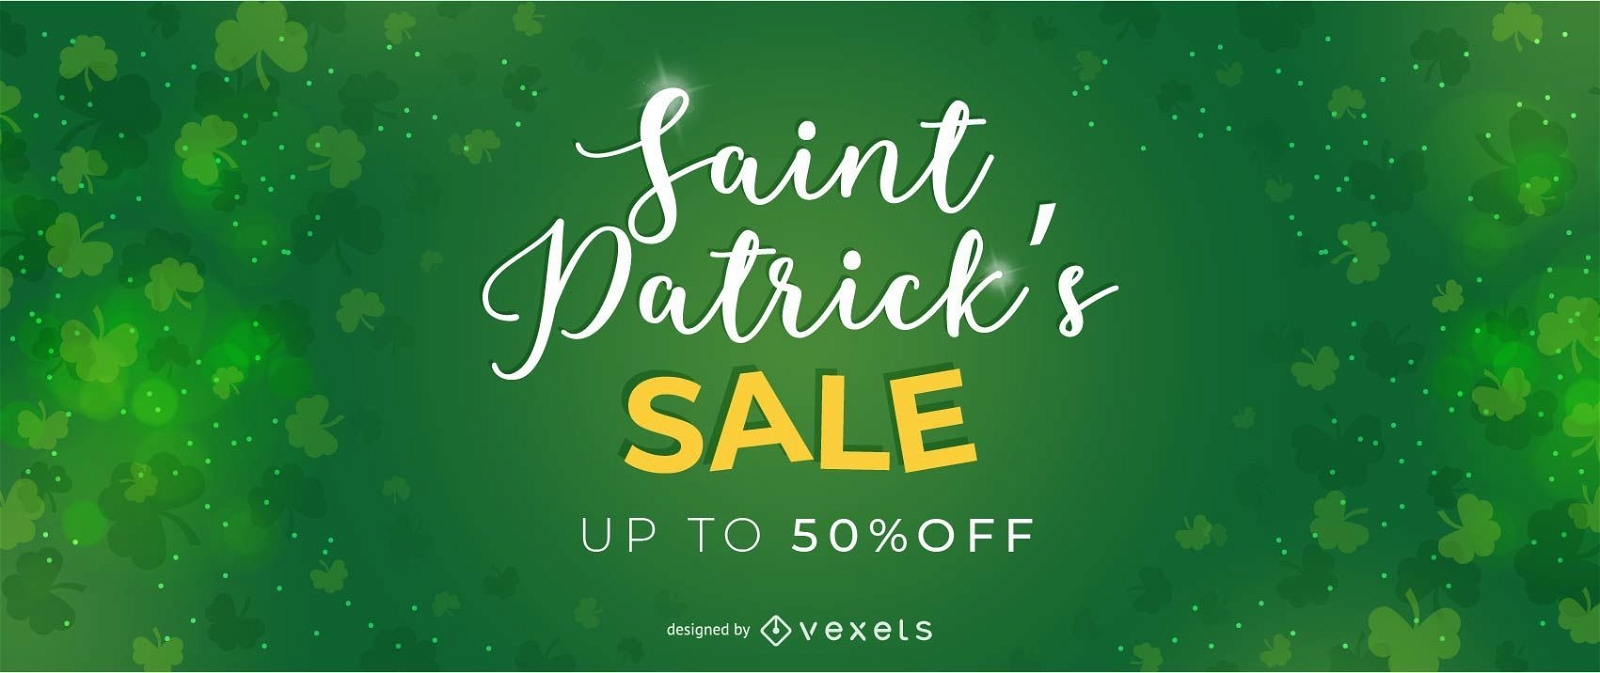 Saint Patrick's Sale Ad Design